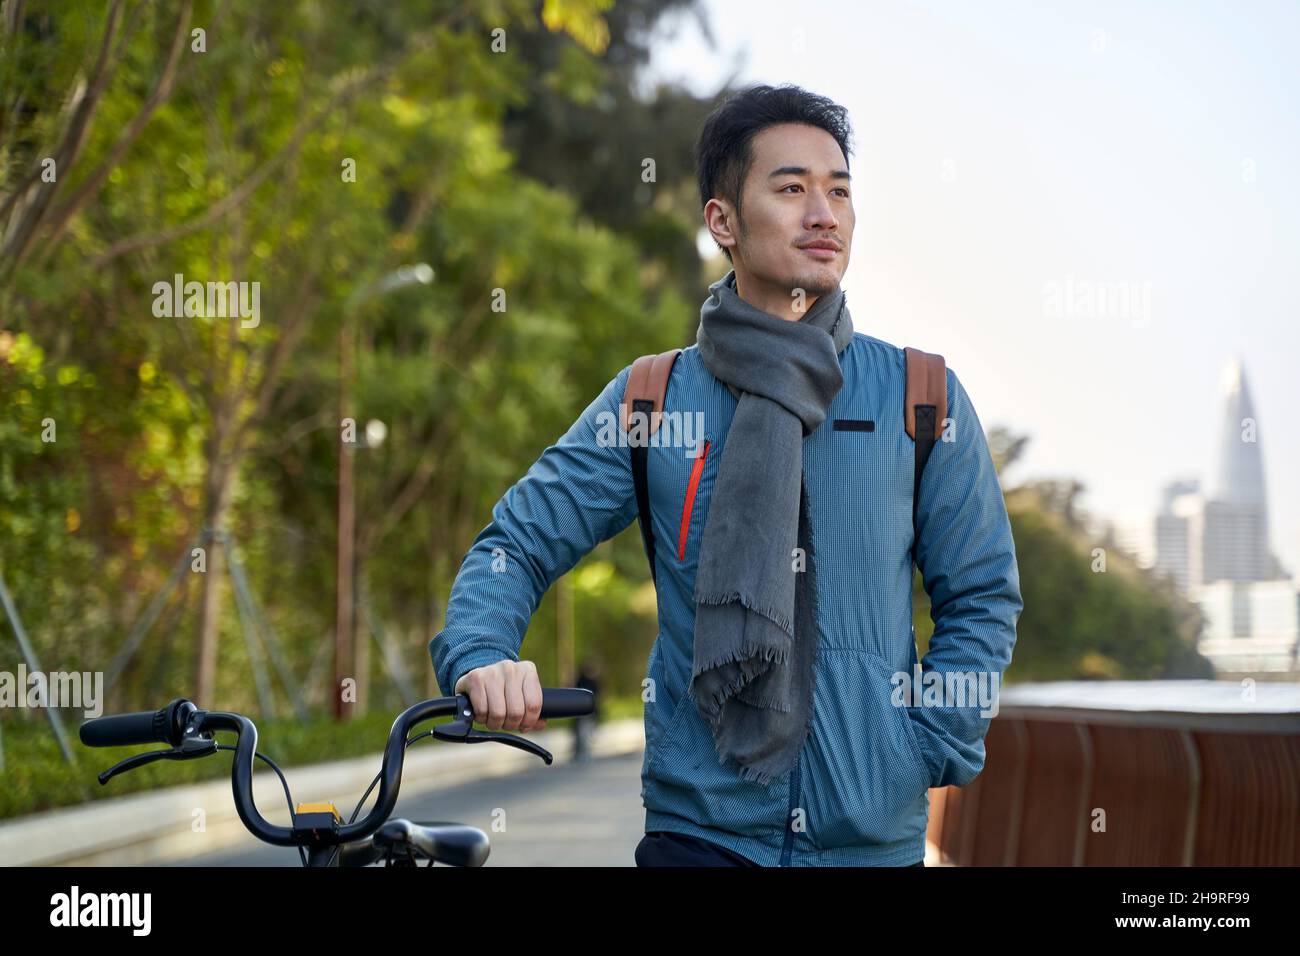 jeune homme asiatique marchant dans un parc public avec un vélo dans une ville moderne Banque D'Images